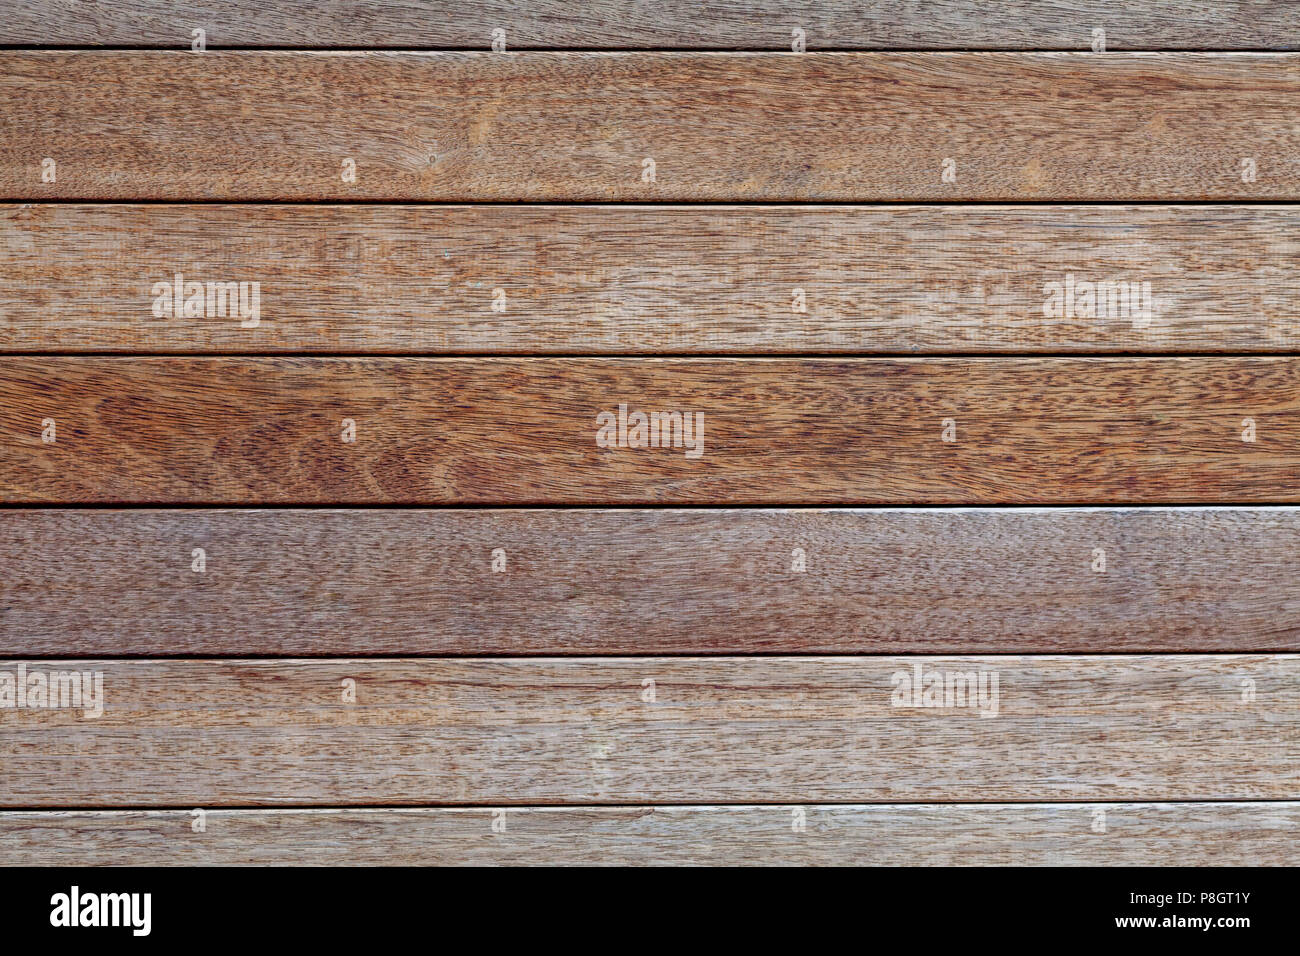 Weathered wood pattern panels Stock Photo